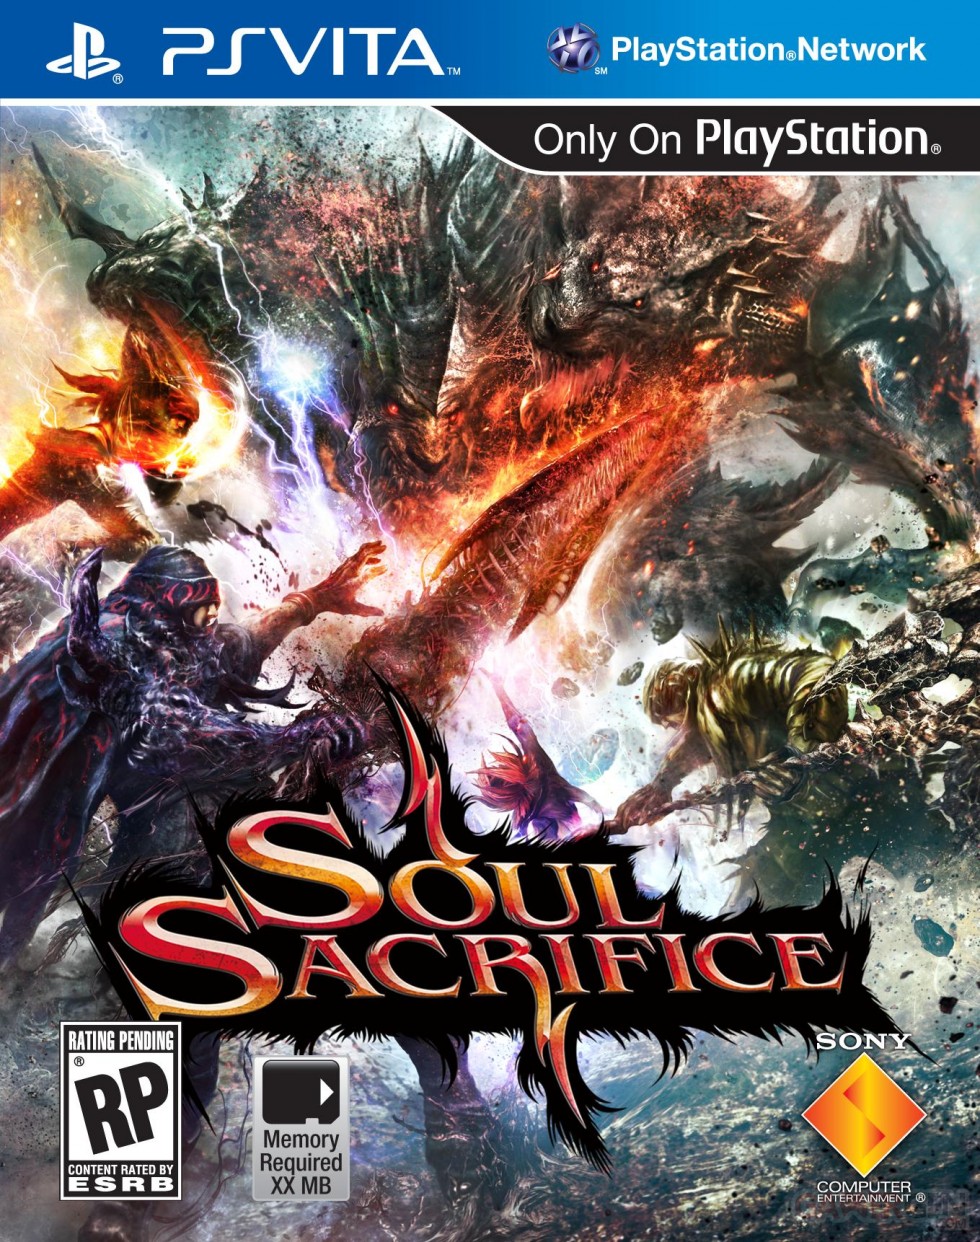 Soul Sacrifice jaquette cover US 29.01.2013.